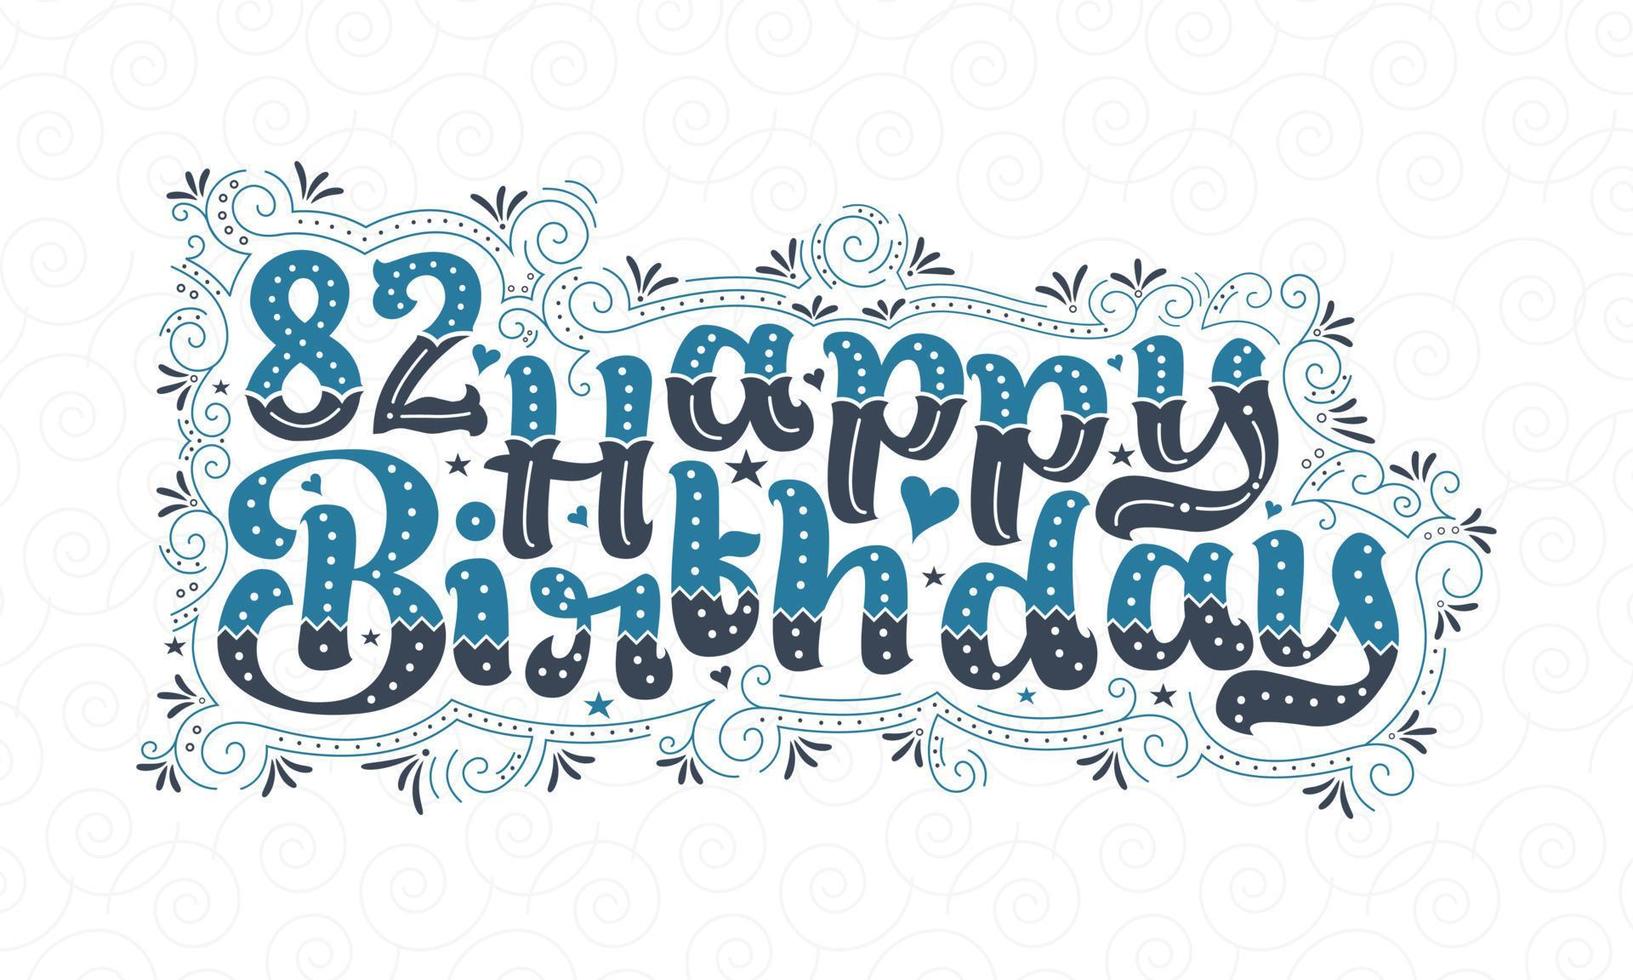 82e gelukkige verjaardag belettering, 82 jaar verjaardag mooi typografieontwerp met blauwe en zwarte stippen, lijnen en bladeren. vector